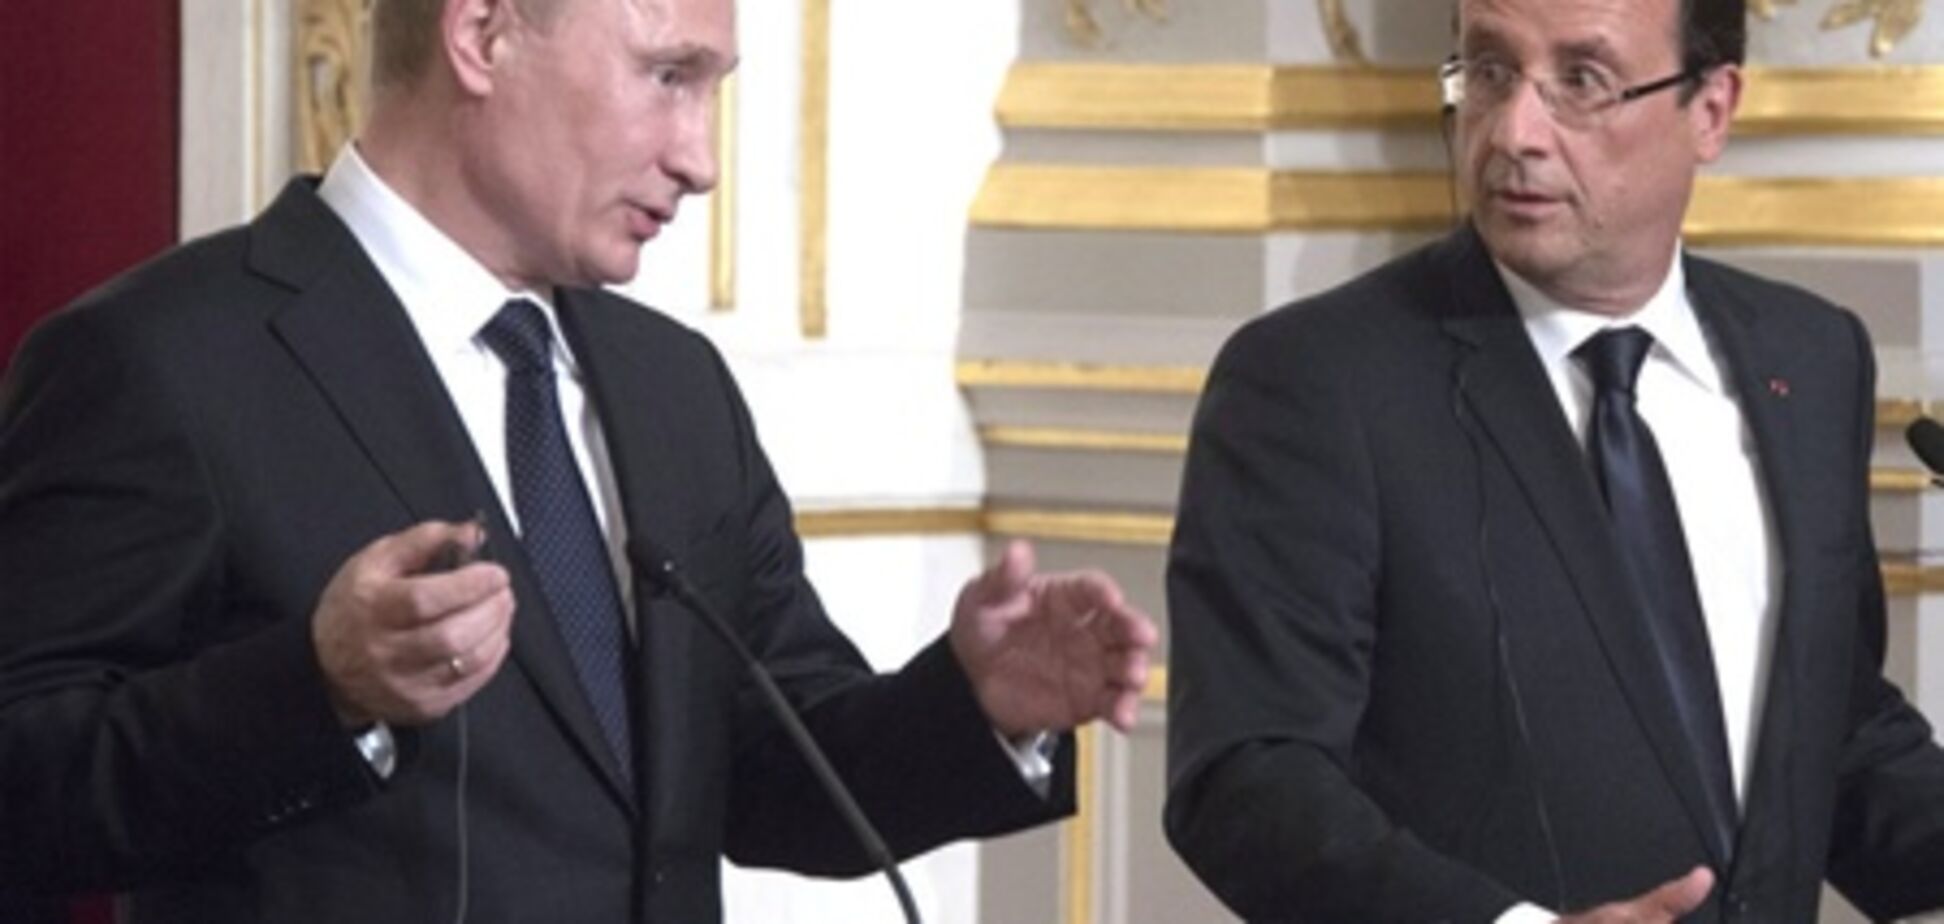 Олланд: с Путиным легко договориться, ведь он говорит то, что думает